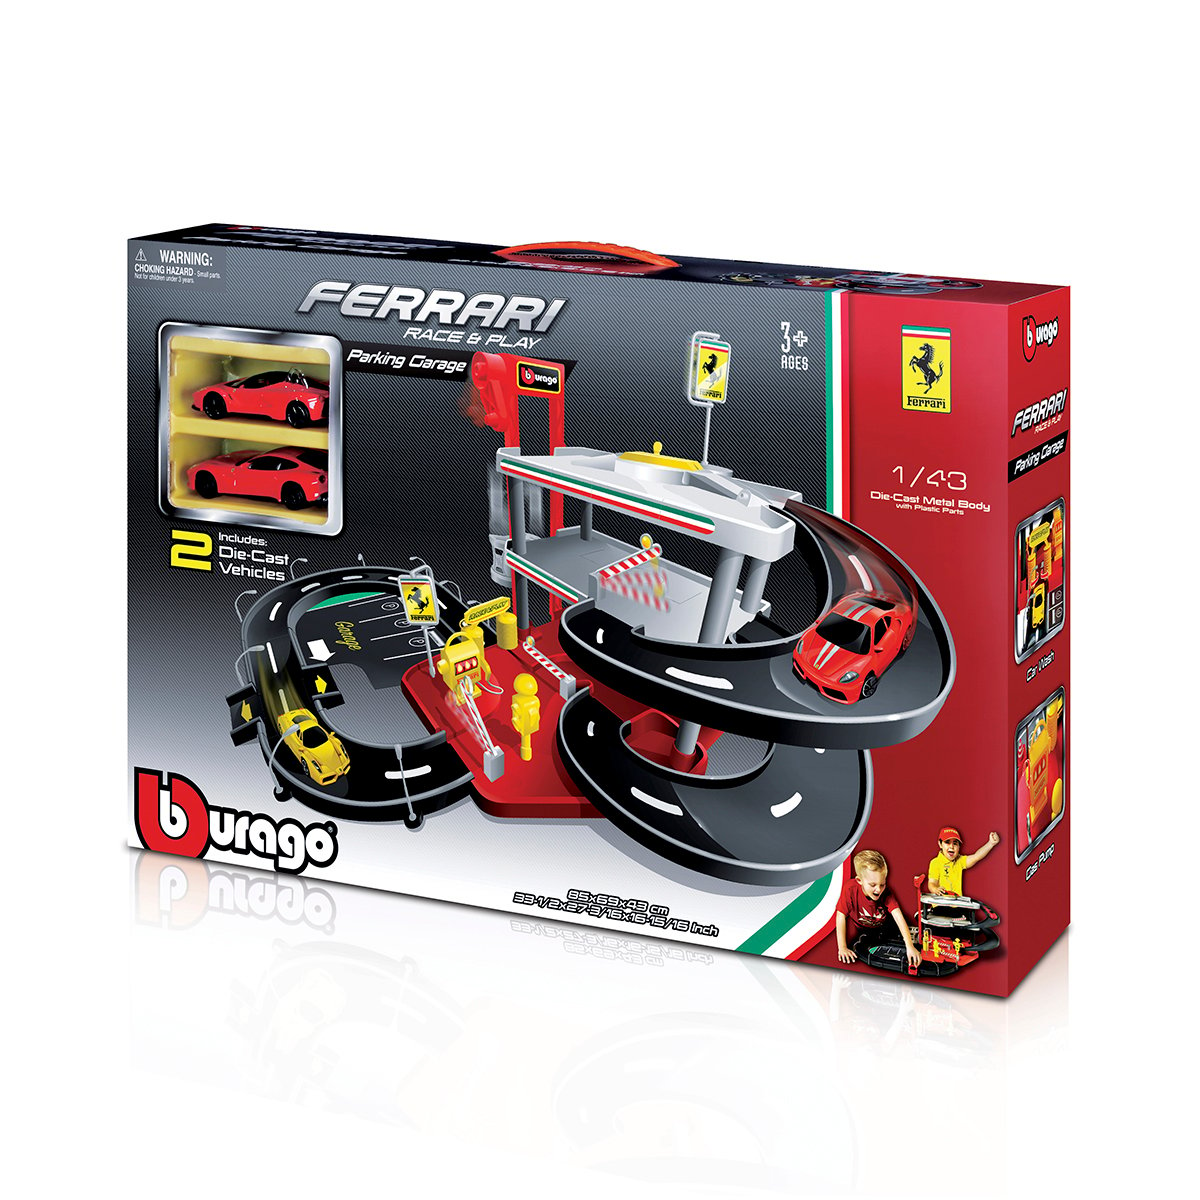 Игровой набор Bburago Гараж Ferrari, 3 уровня (18-31204) - фото 6